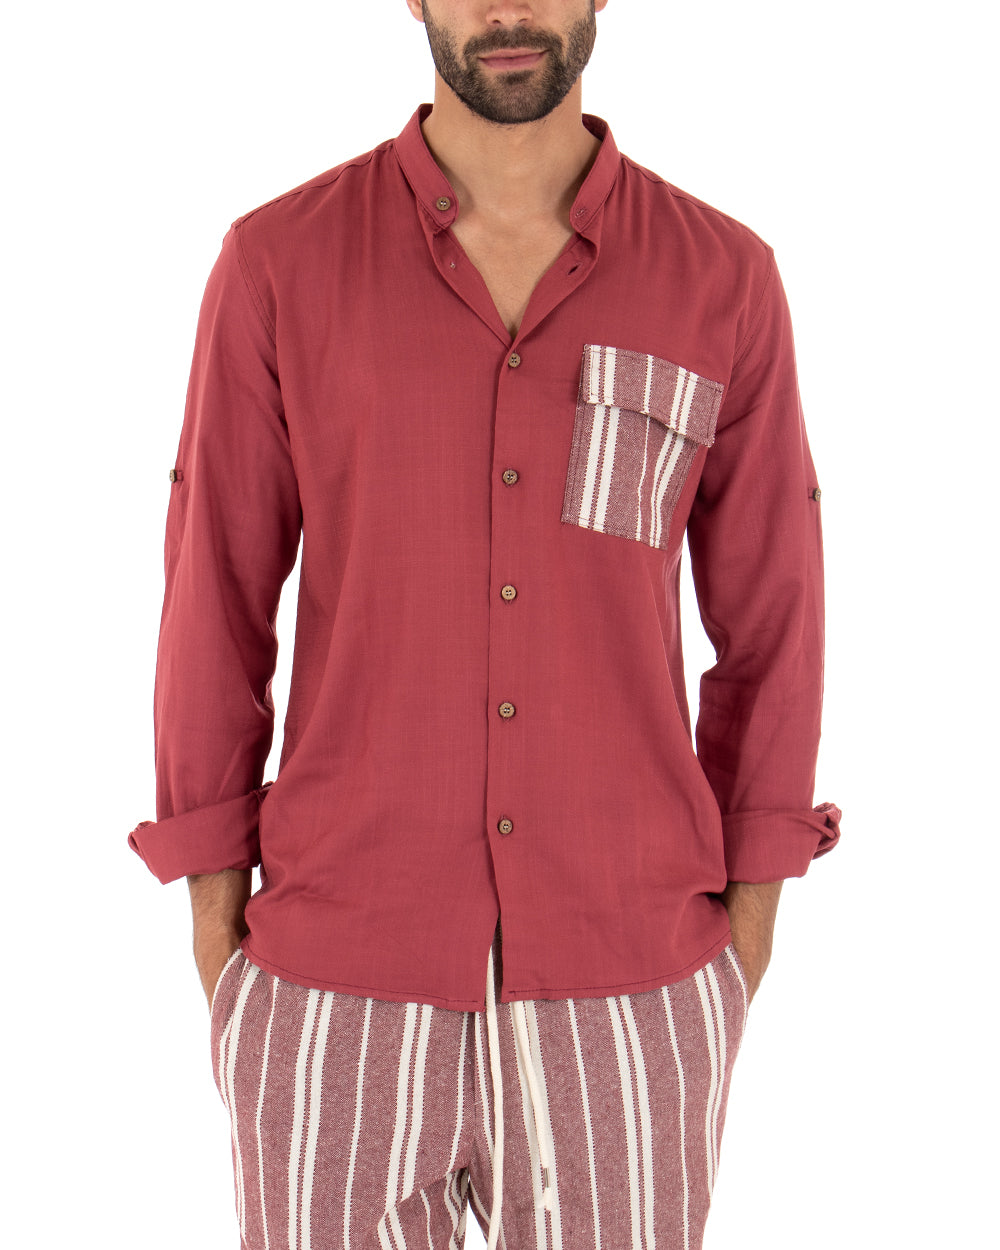 Men's Mandarin Collar Shirt Long Sleeve Regular Fit Soft Viscose Red GIOSAL-C2411A